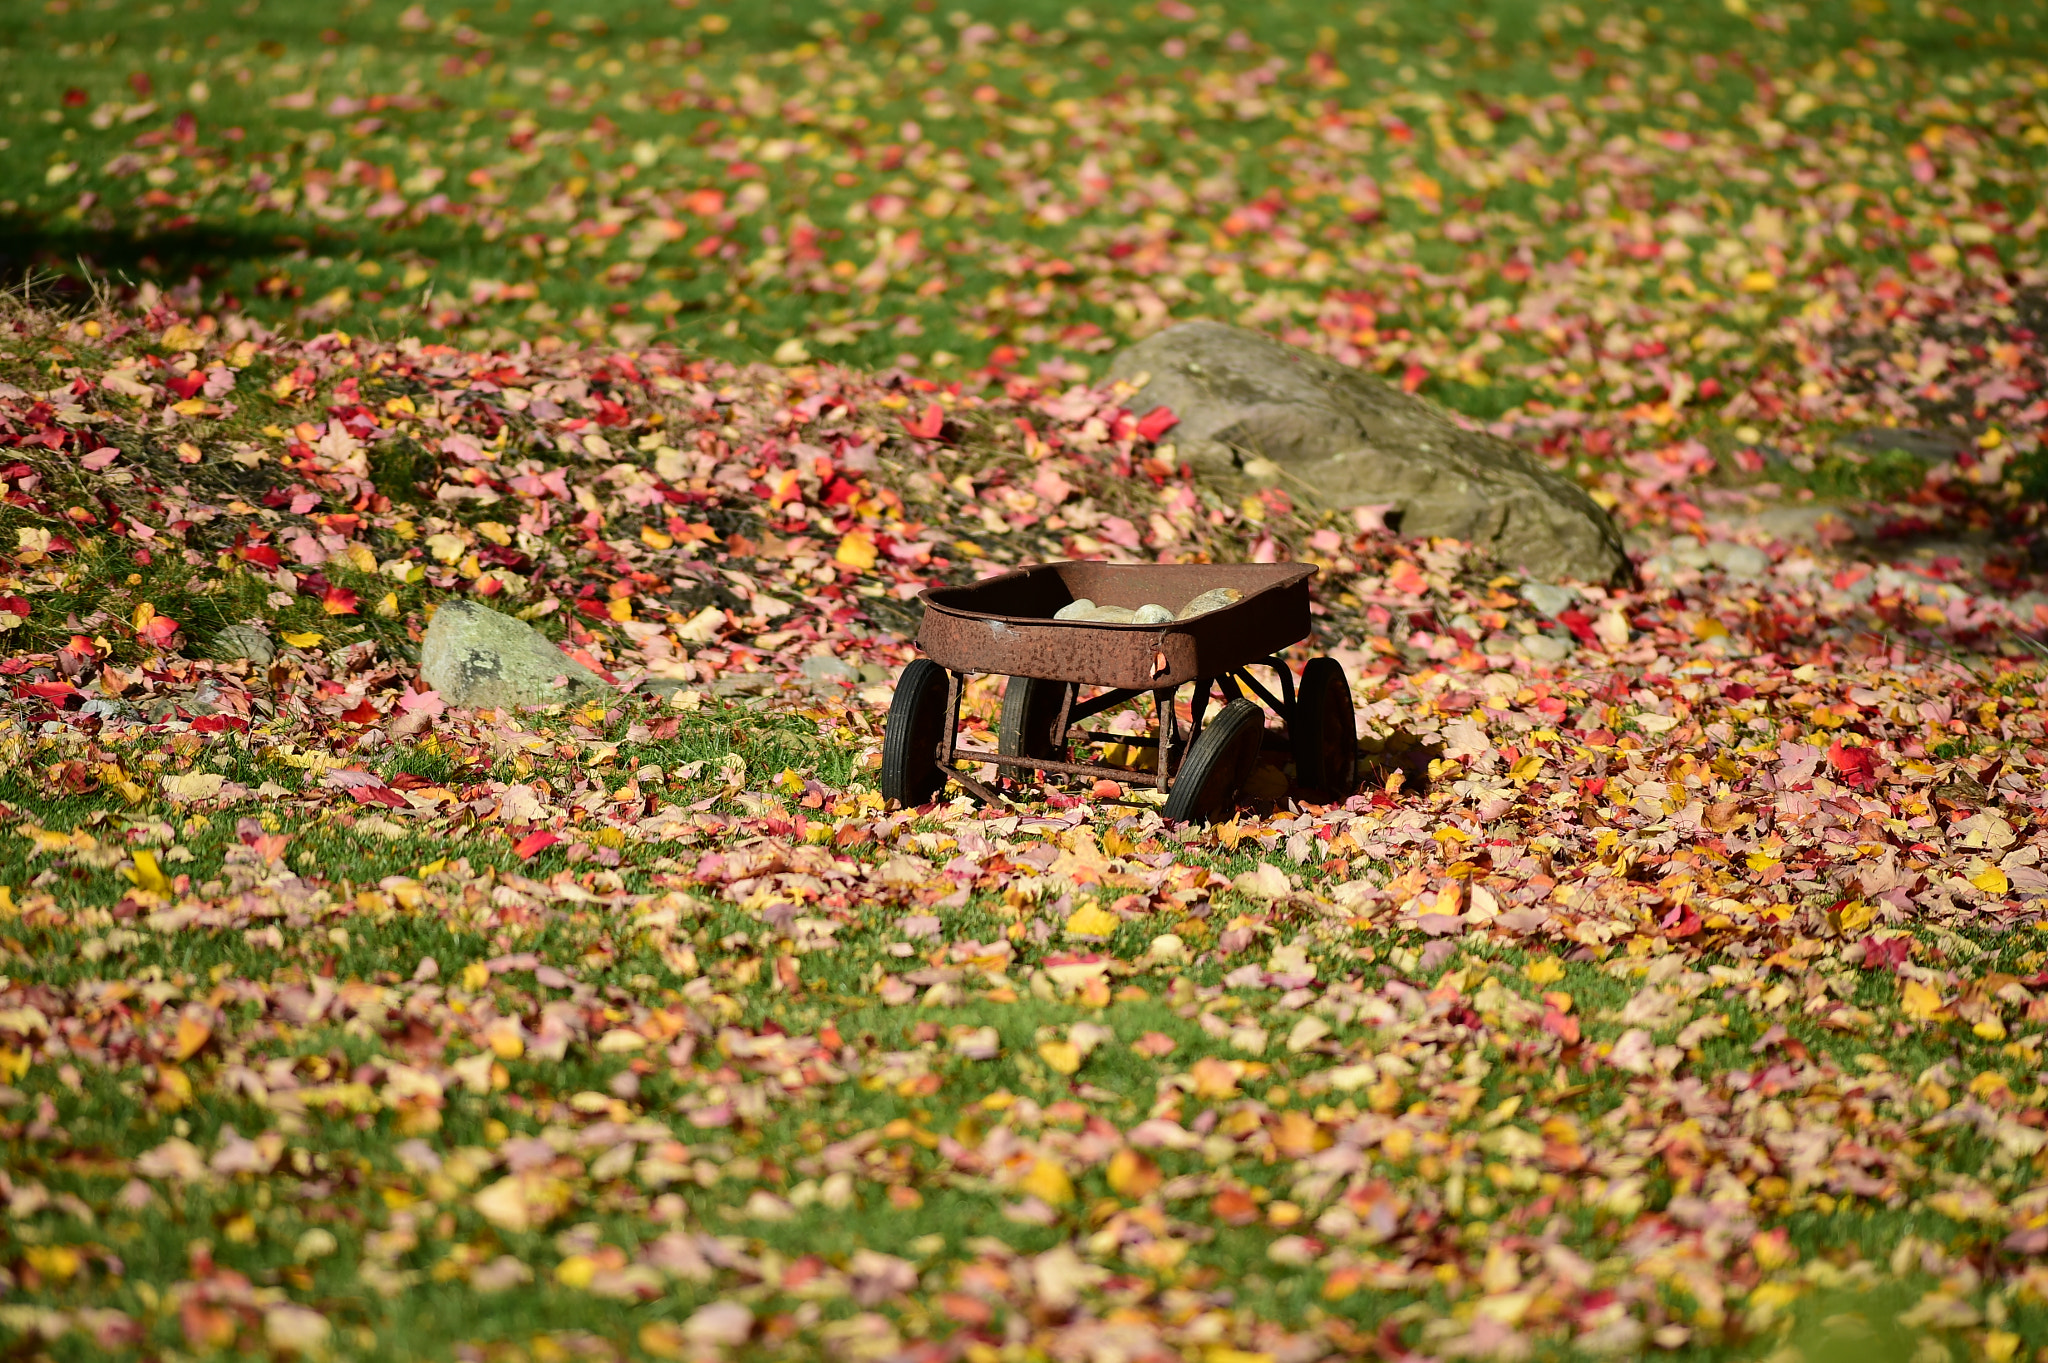 Tokina AT-X 304 AF (AF 300mm f/4.0) sample photo. Crisp autumn morning photography